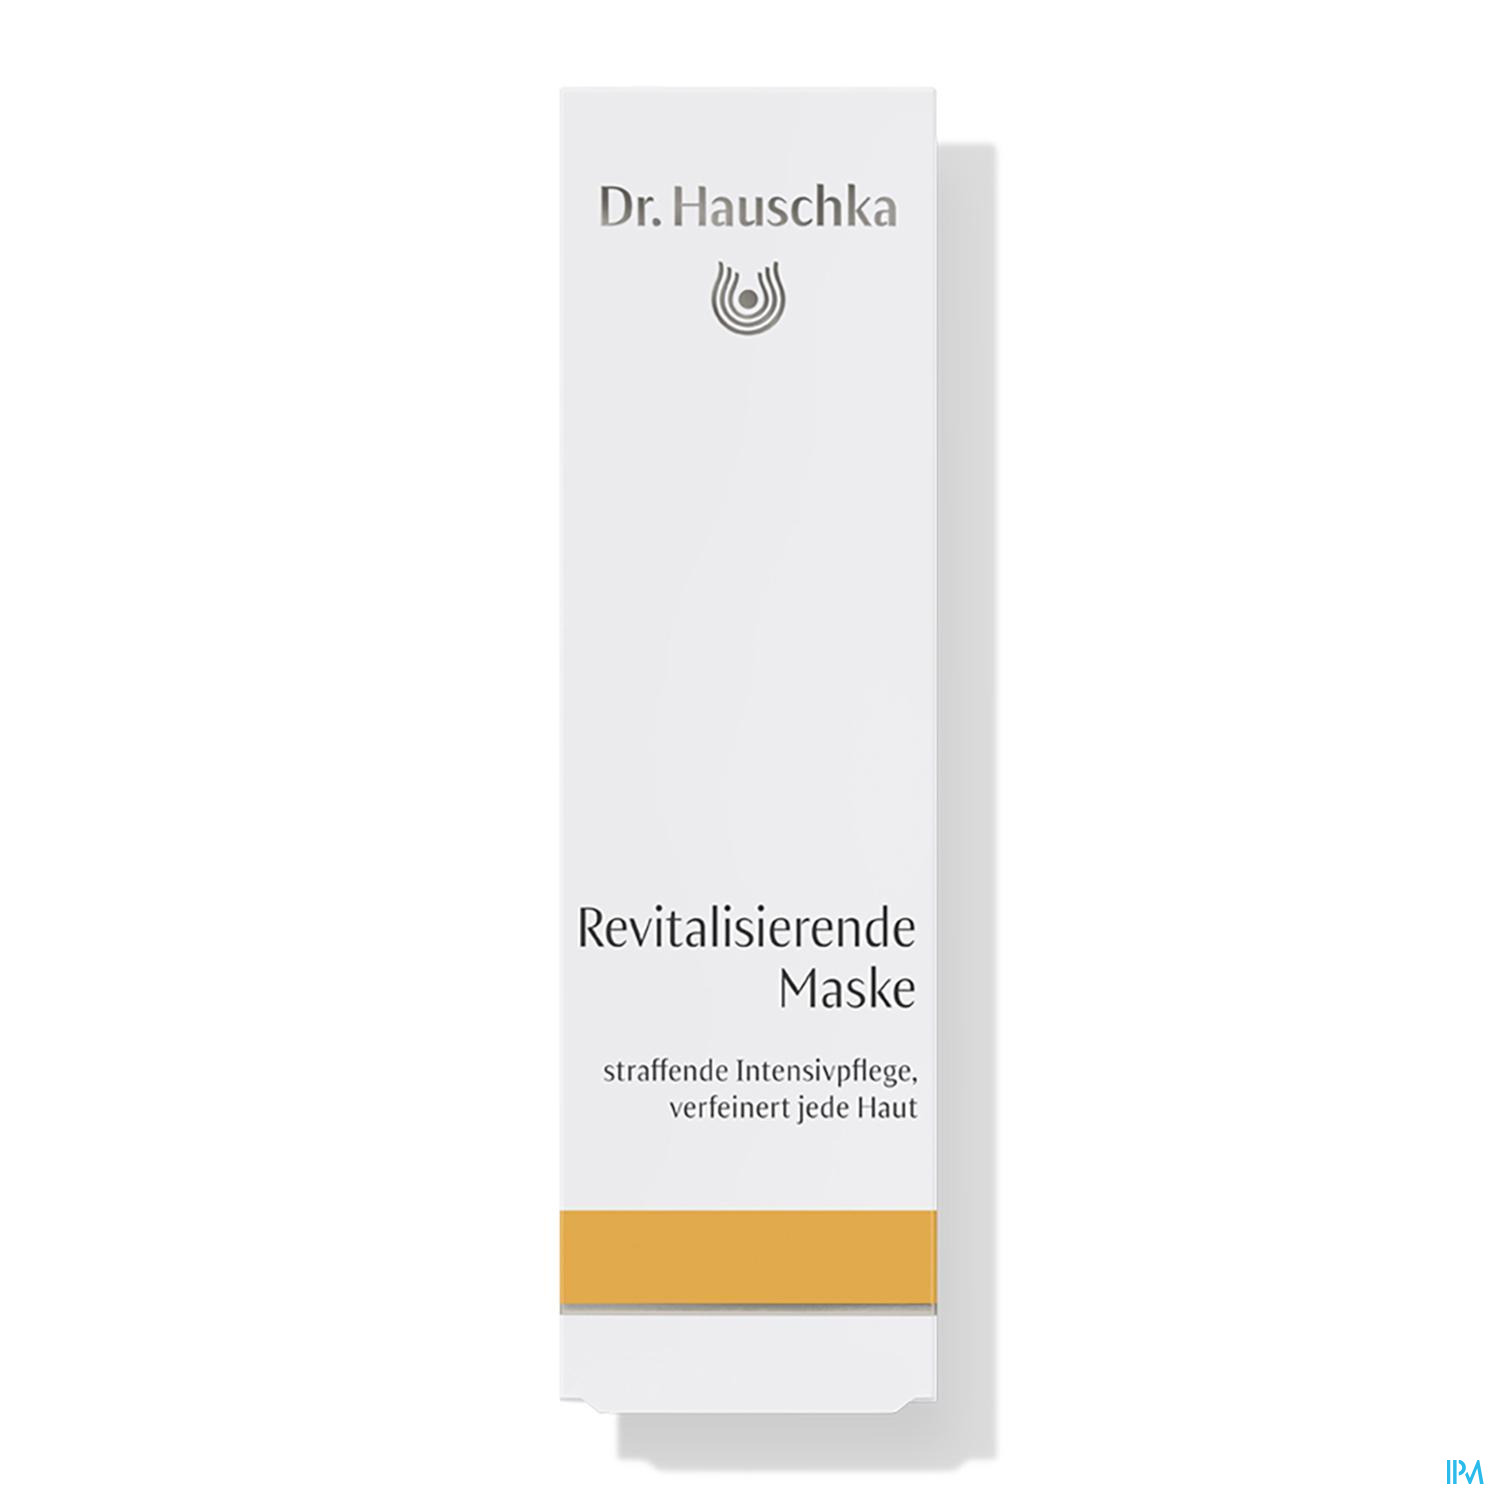 Dr. Hauschka Revitalisierende Maske 30ml